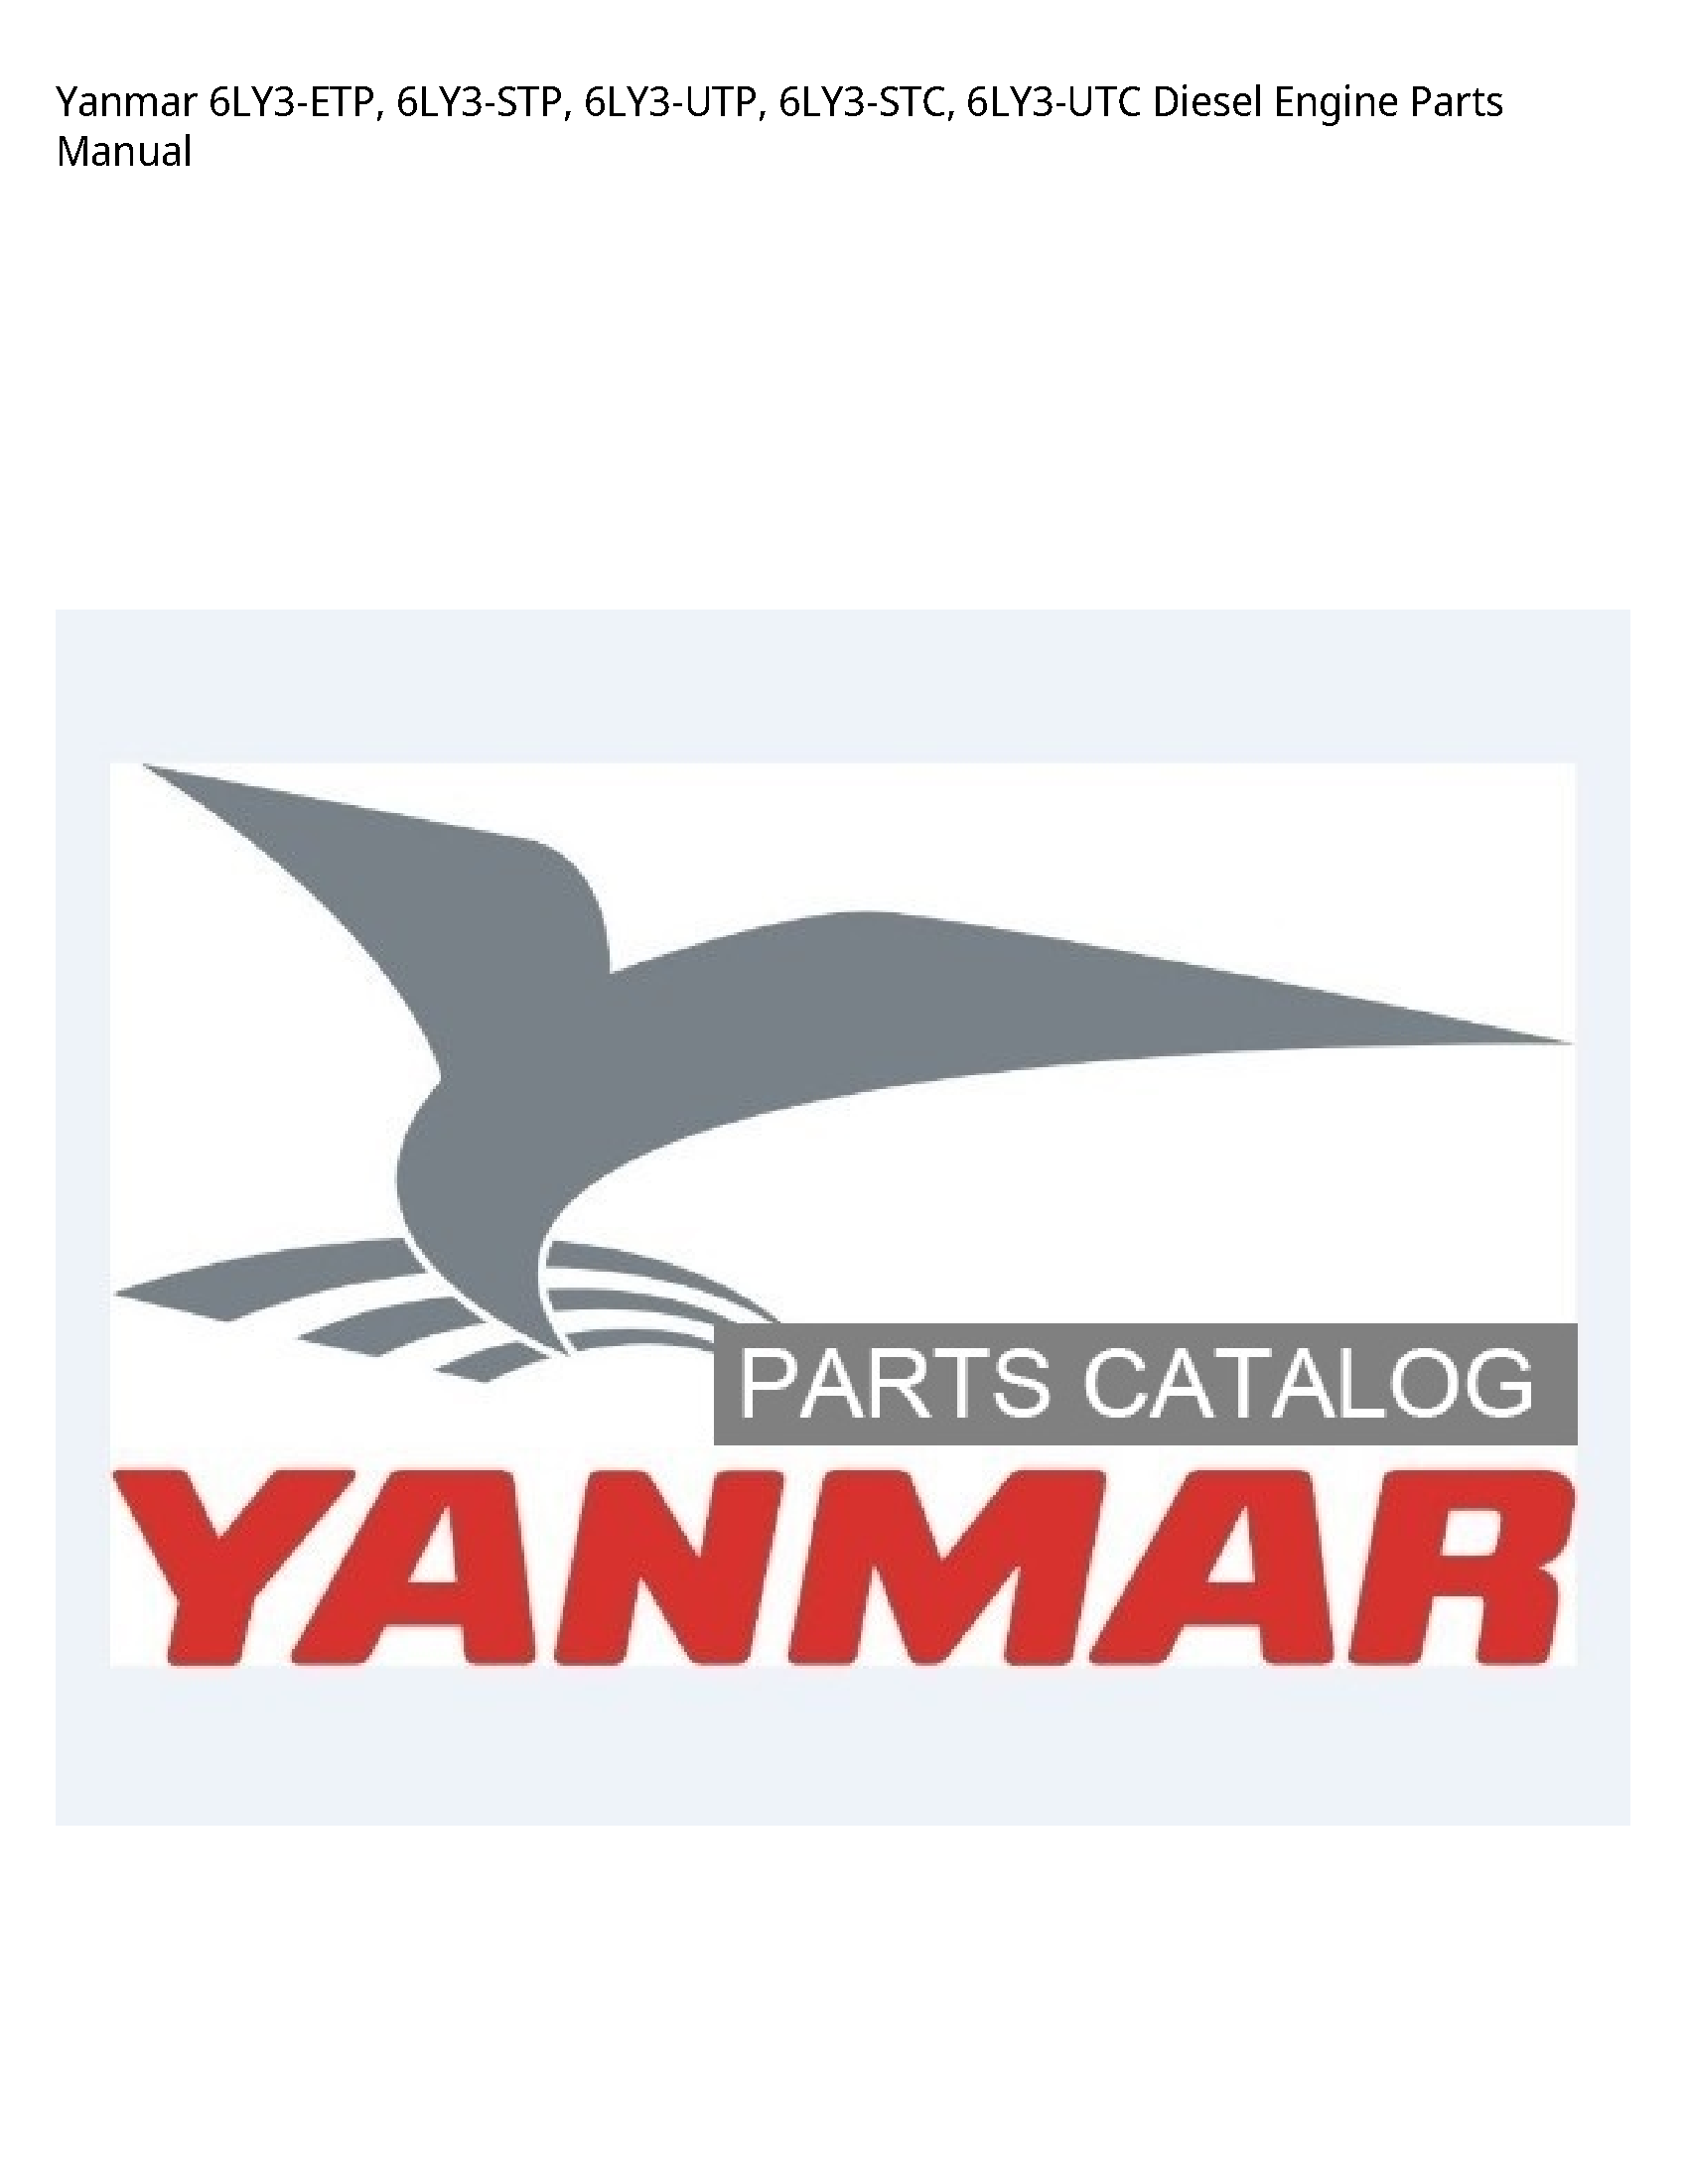 Yanmar 6LY3-ETP Diesel Engine Parts manual